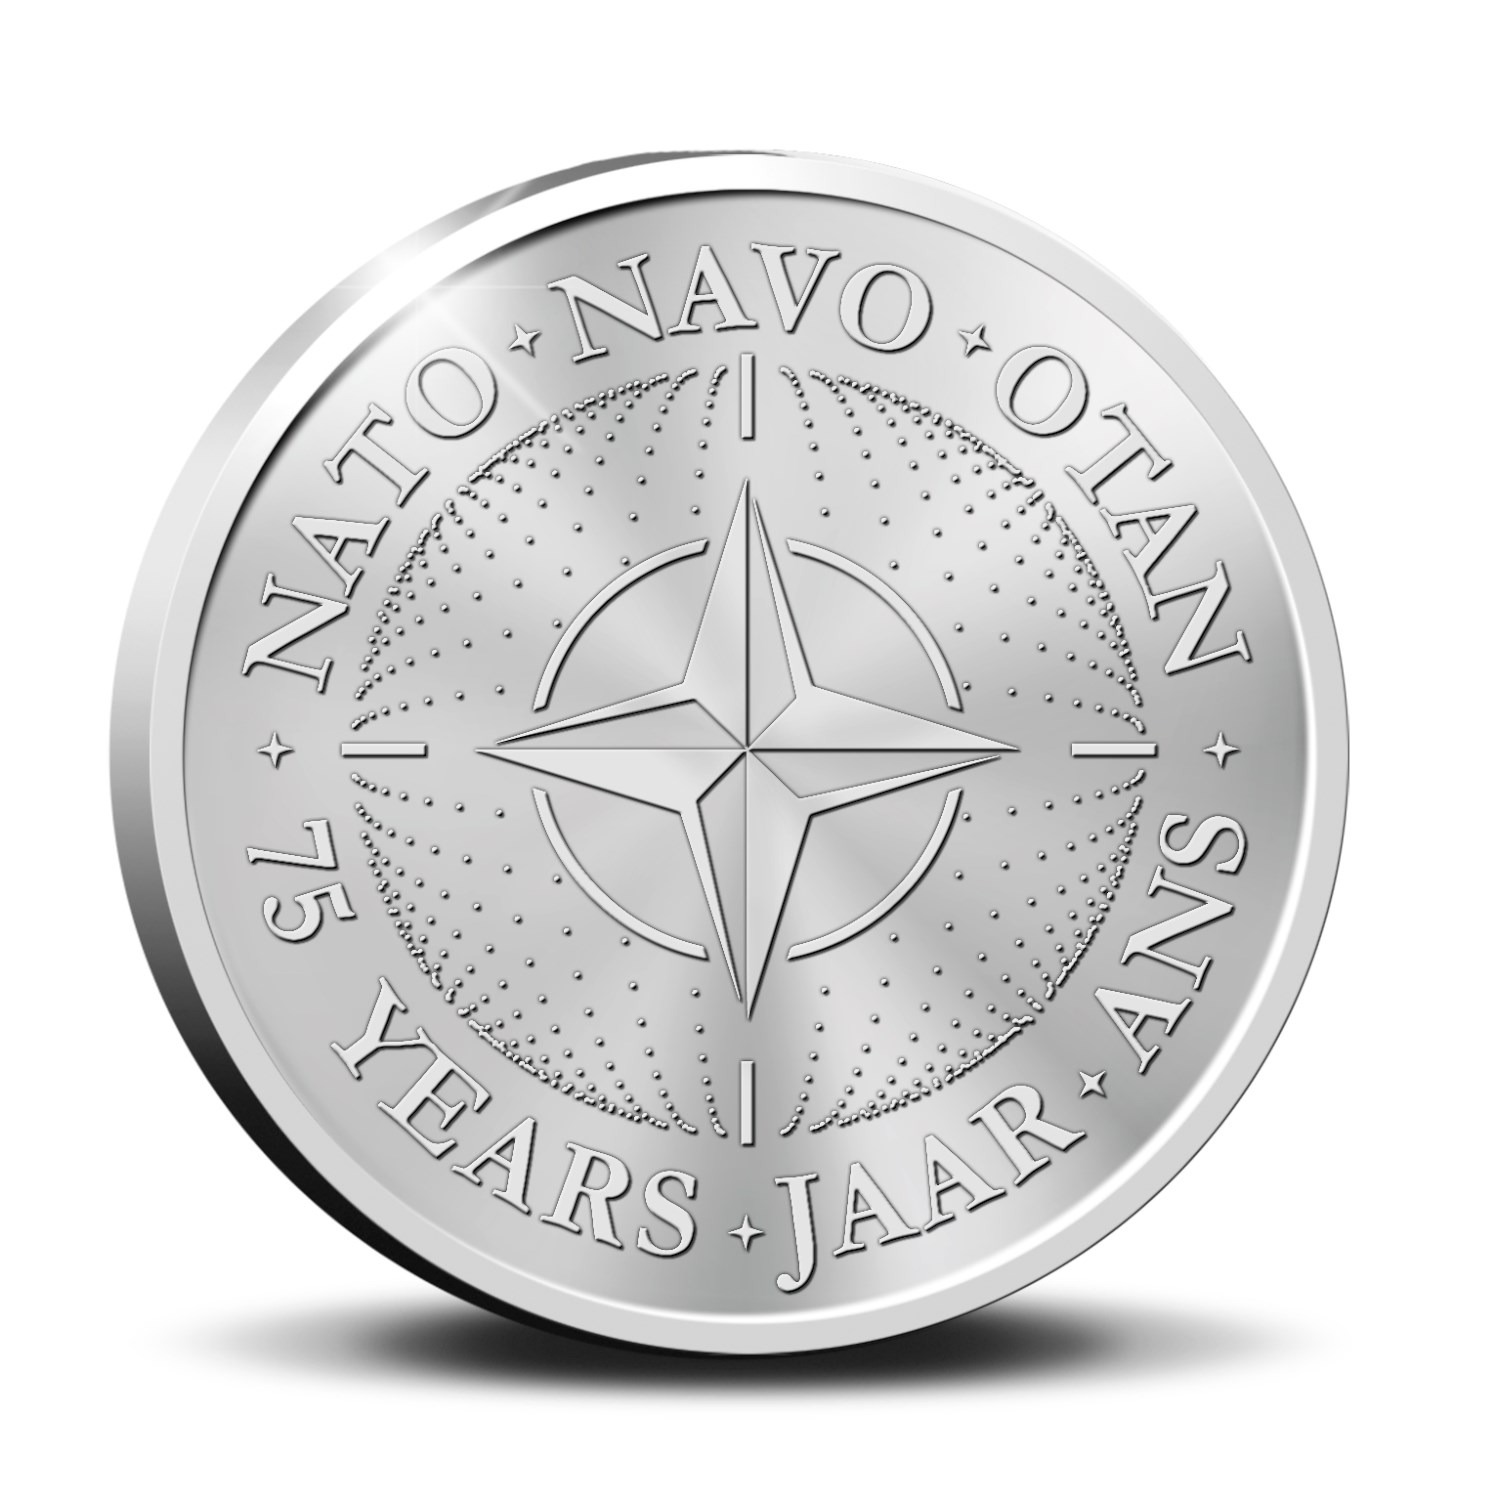 Belgia - moneta kolekcjonerska - Nowości ze świata monet i banknotów